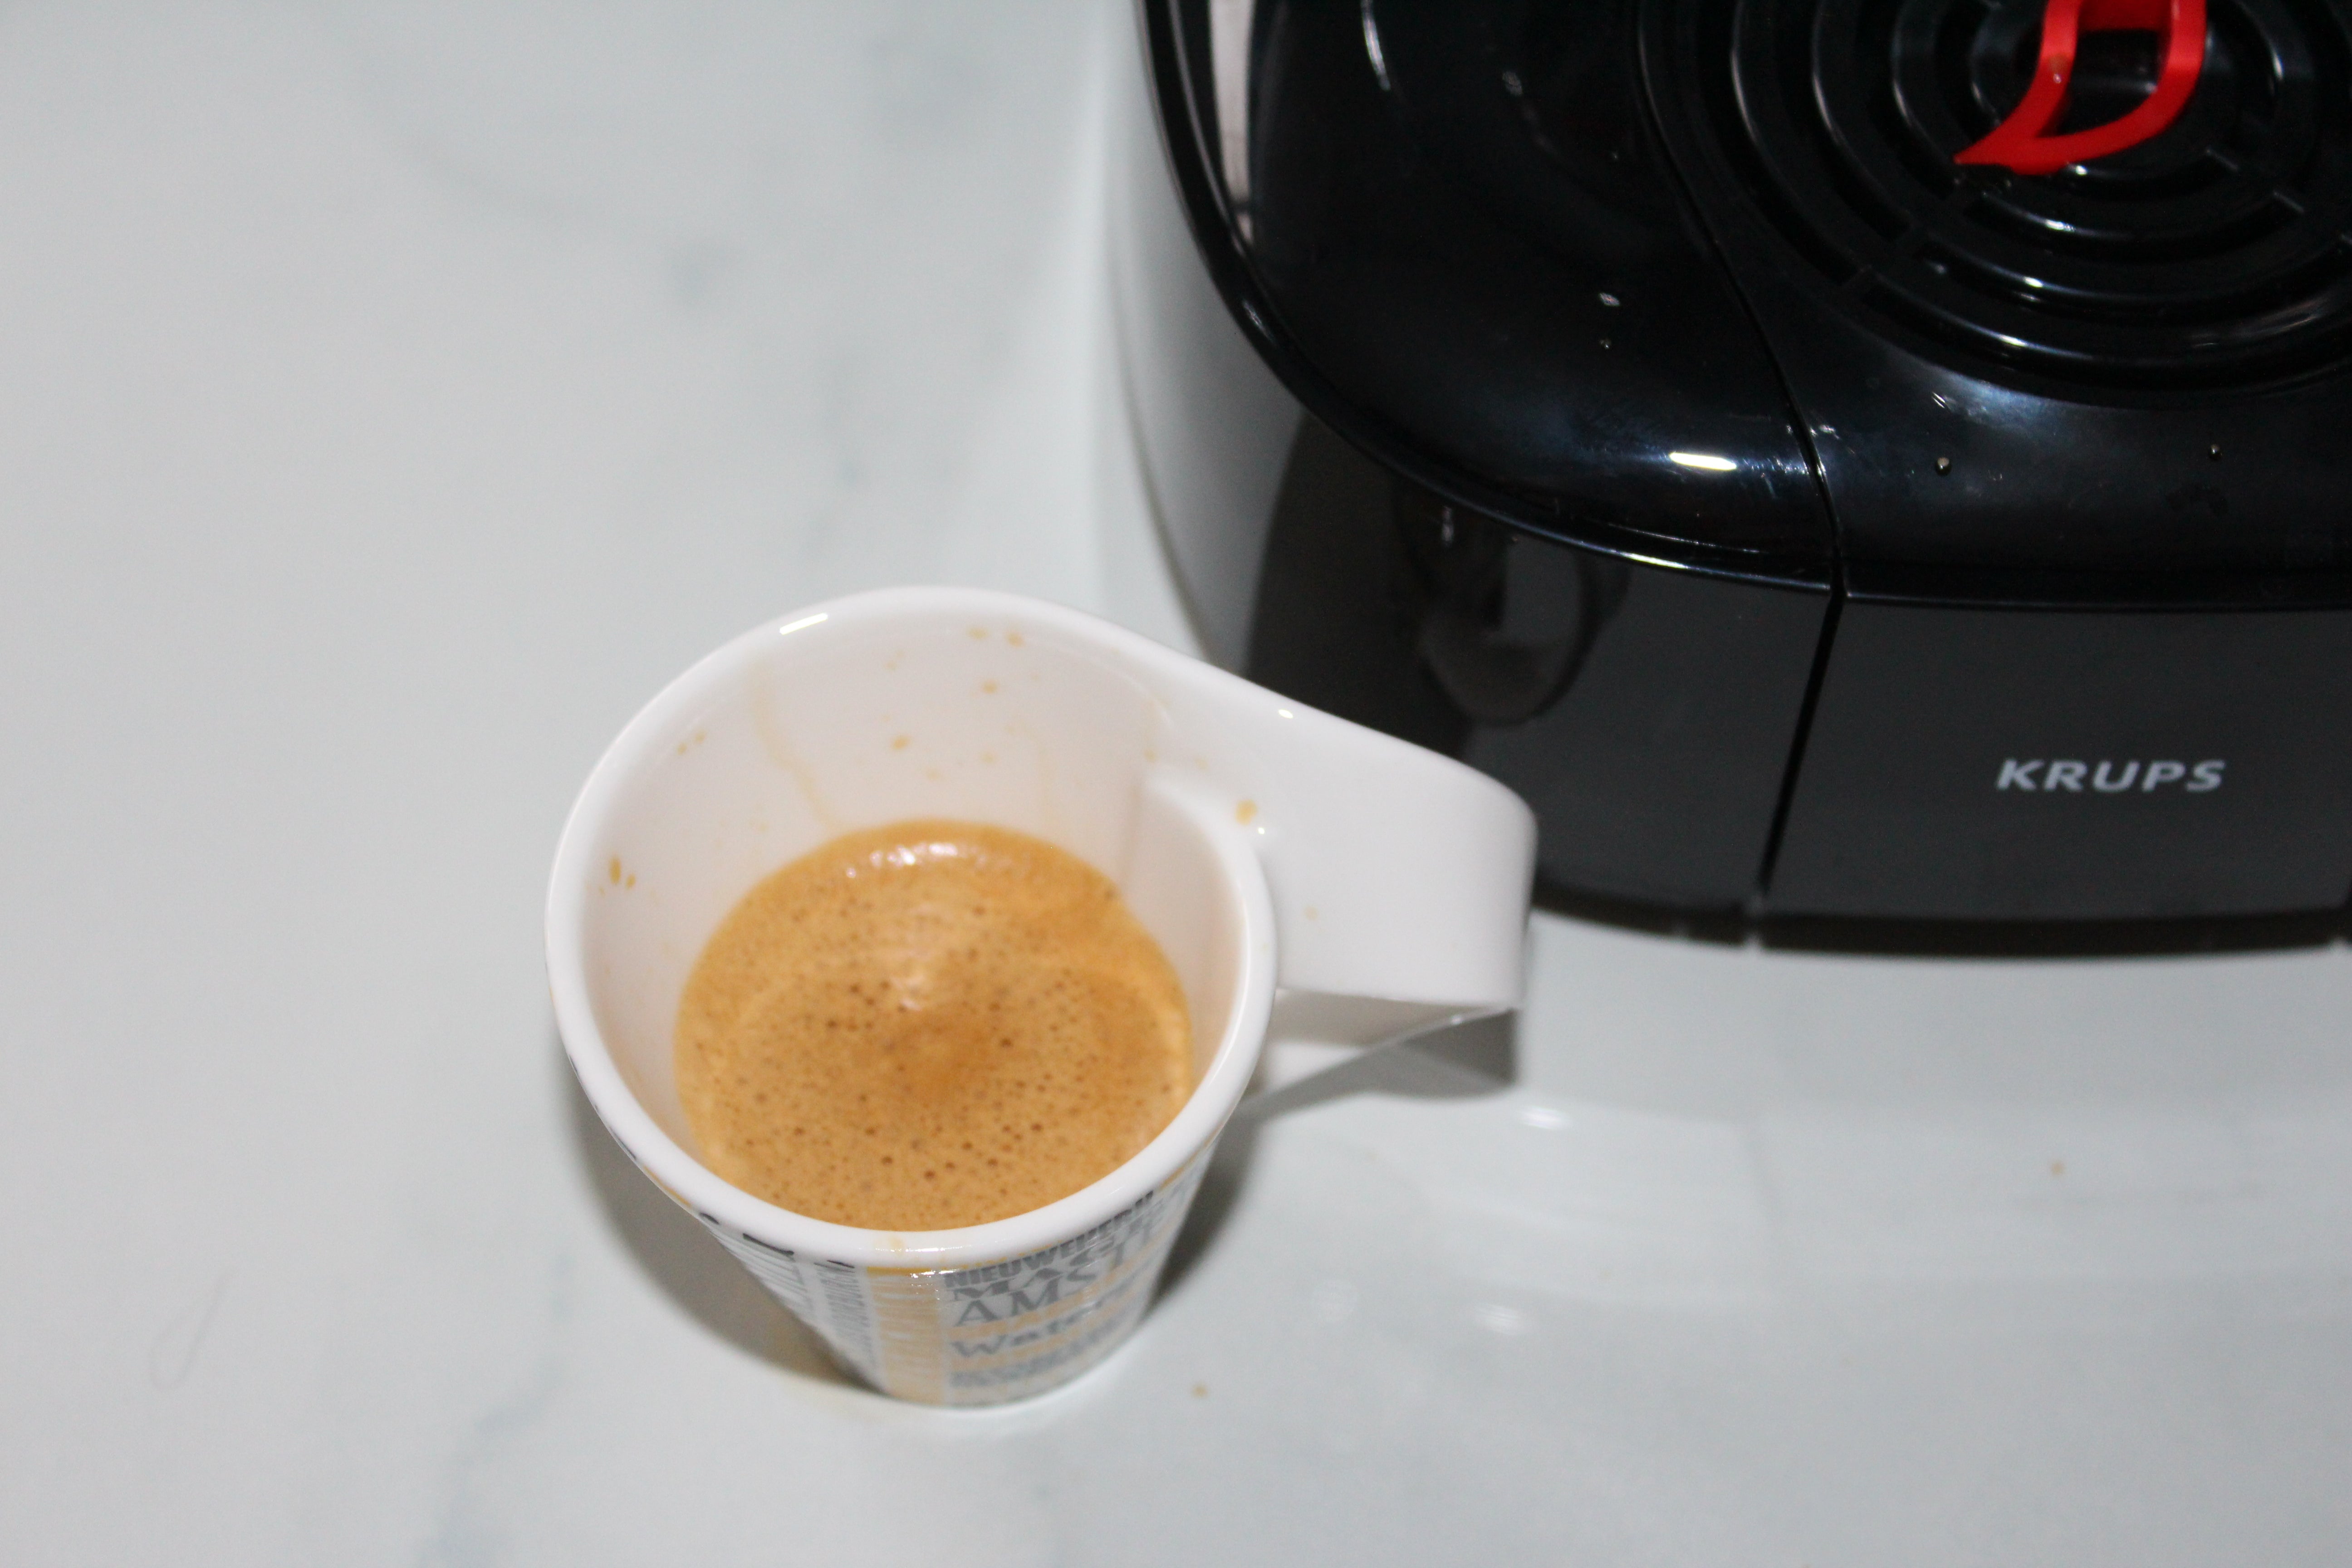 Krups NUOVO KP130140 1500W 1L Lumio compatto DOLCE GUSTO coffee pod machine maker 